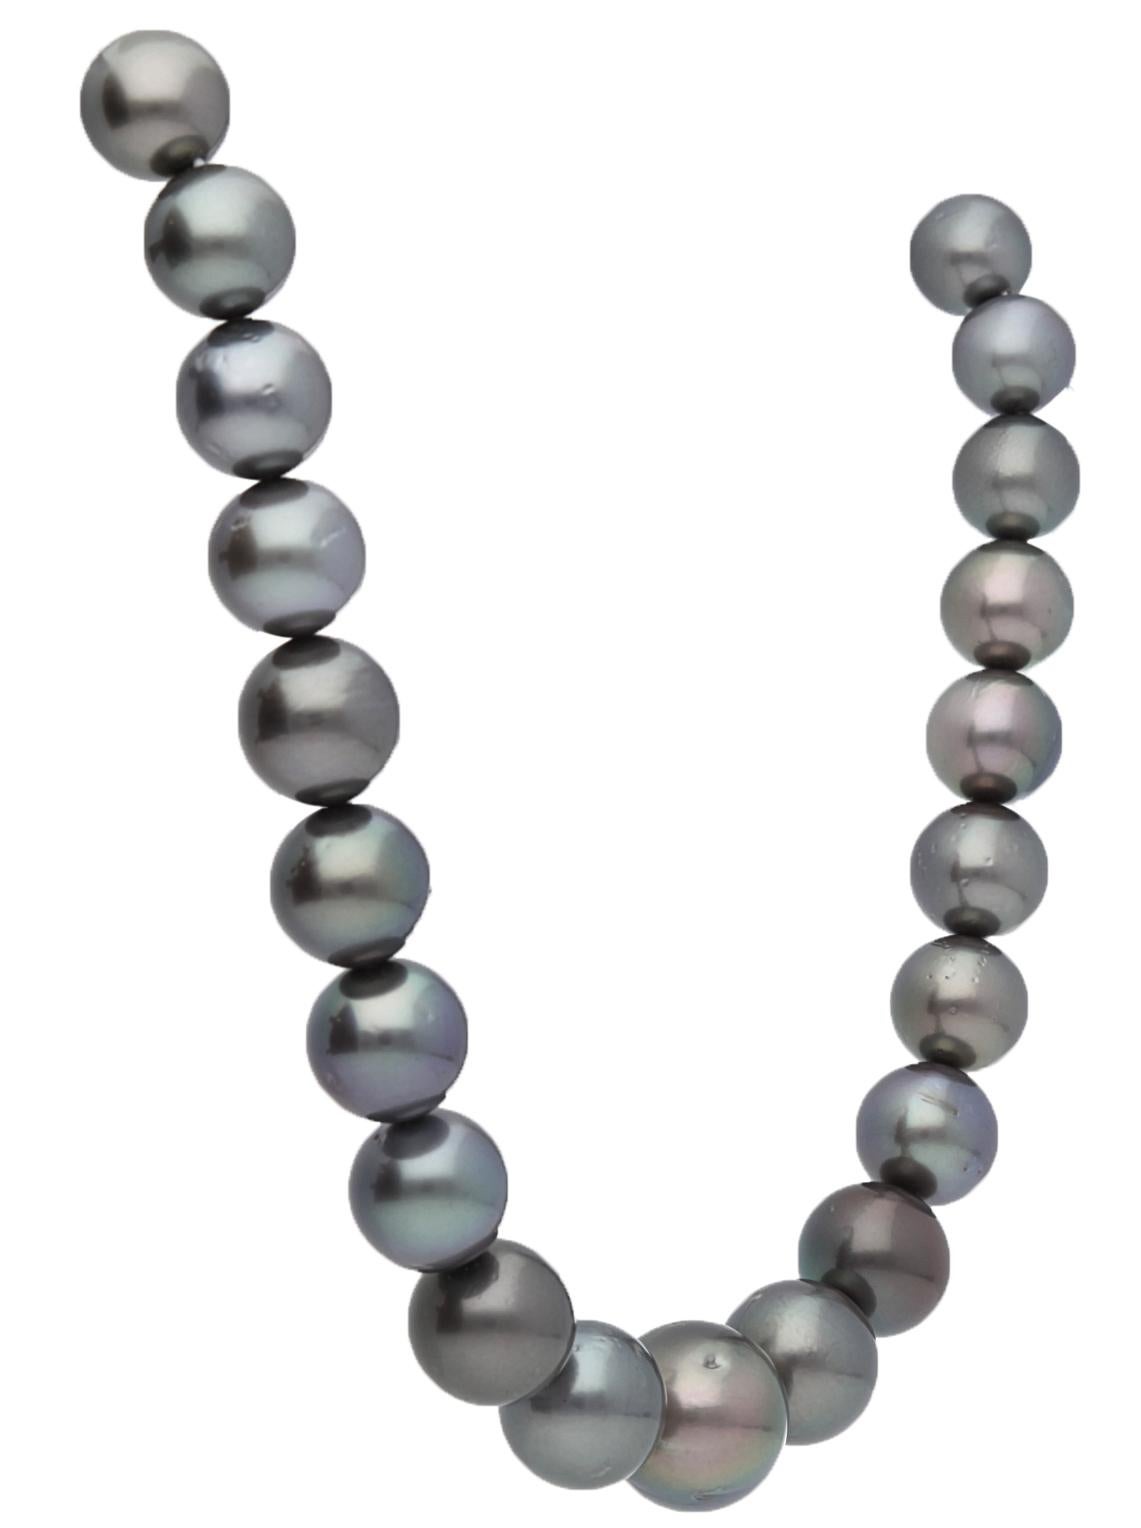 Tahiti-Südseeperlenkette in den Größen von 11 mm bis 16 mm
Perlen insgesamt: 35
Gesamtgewicht: ct 477
Gesamtgewicht mit Büscheln: 100 Gramm

Halskette ohne Klammern
Effektive Länge ohne Befestigung: 43 cm

- •DIE HERSTELLUNG ERFOLGT IN ITALIEN

-